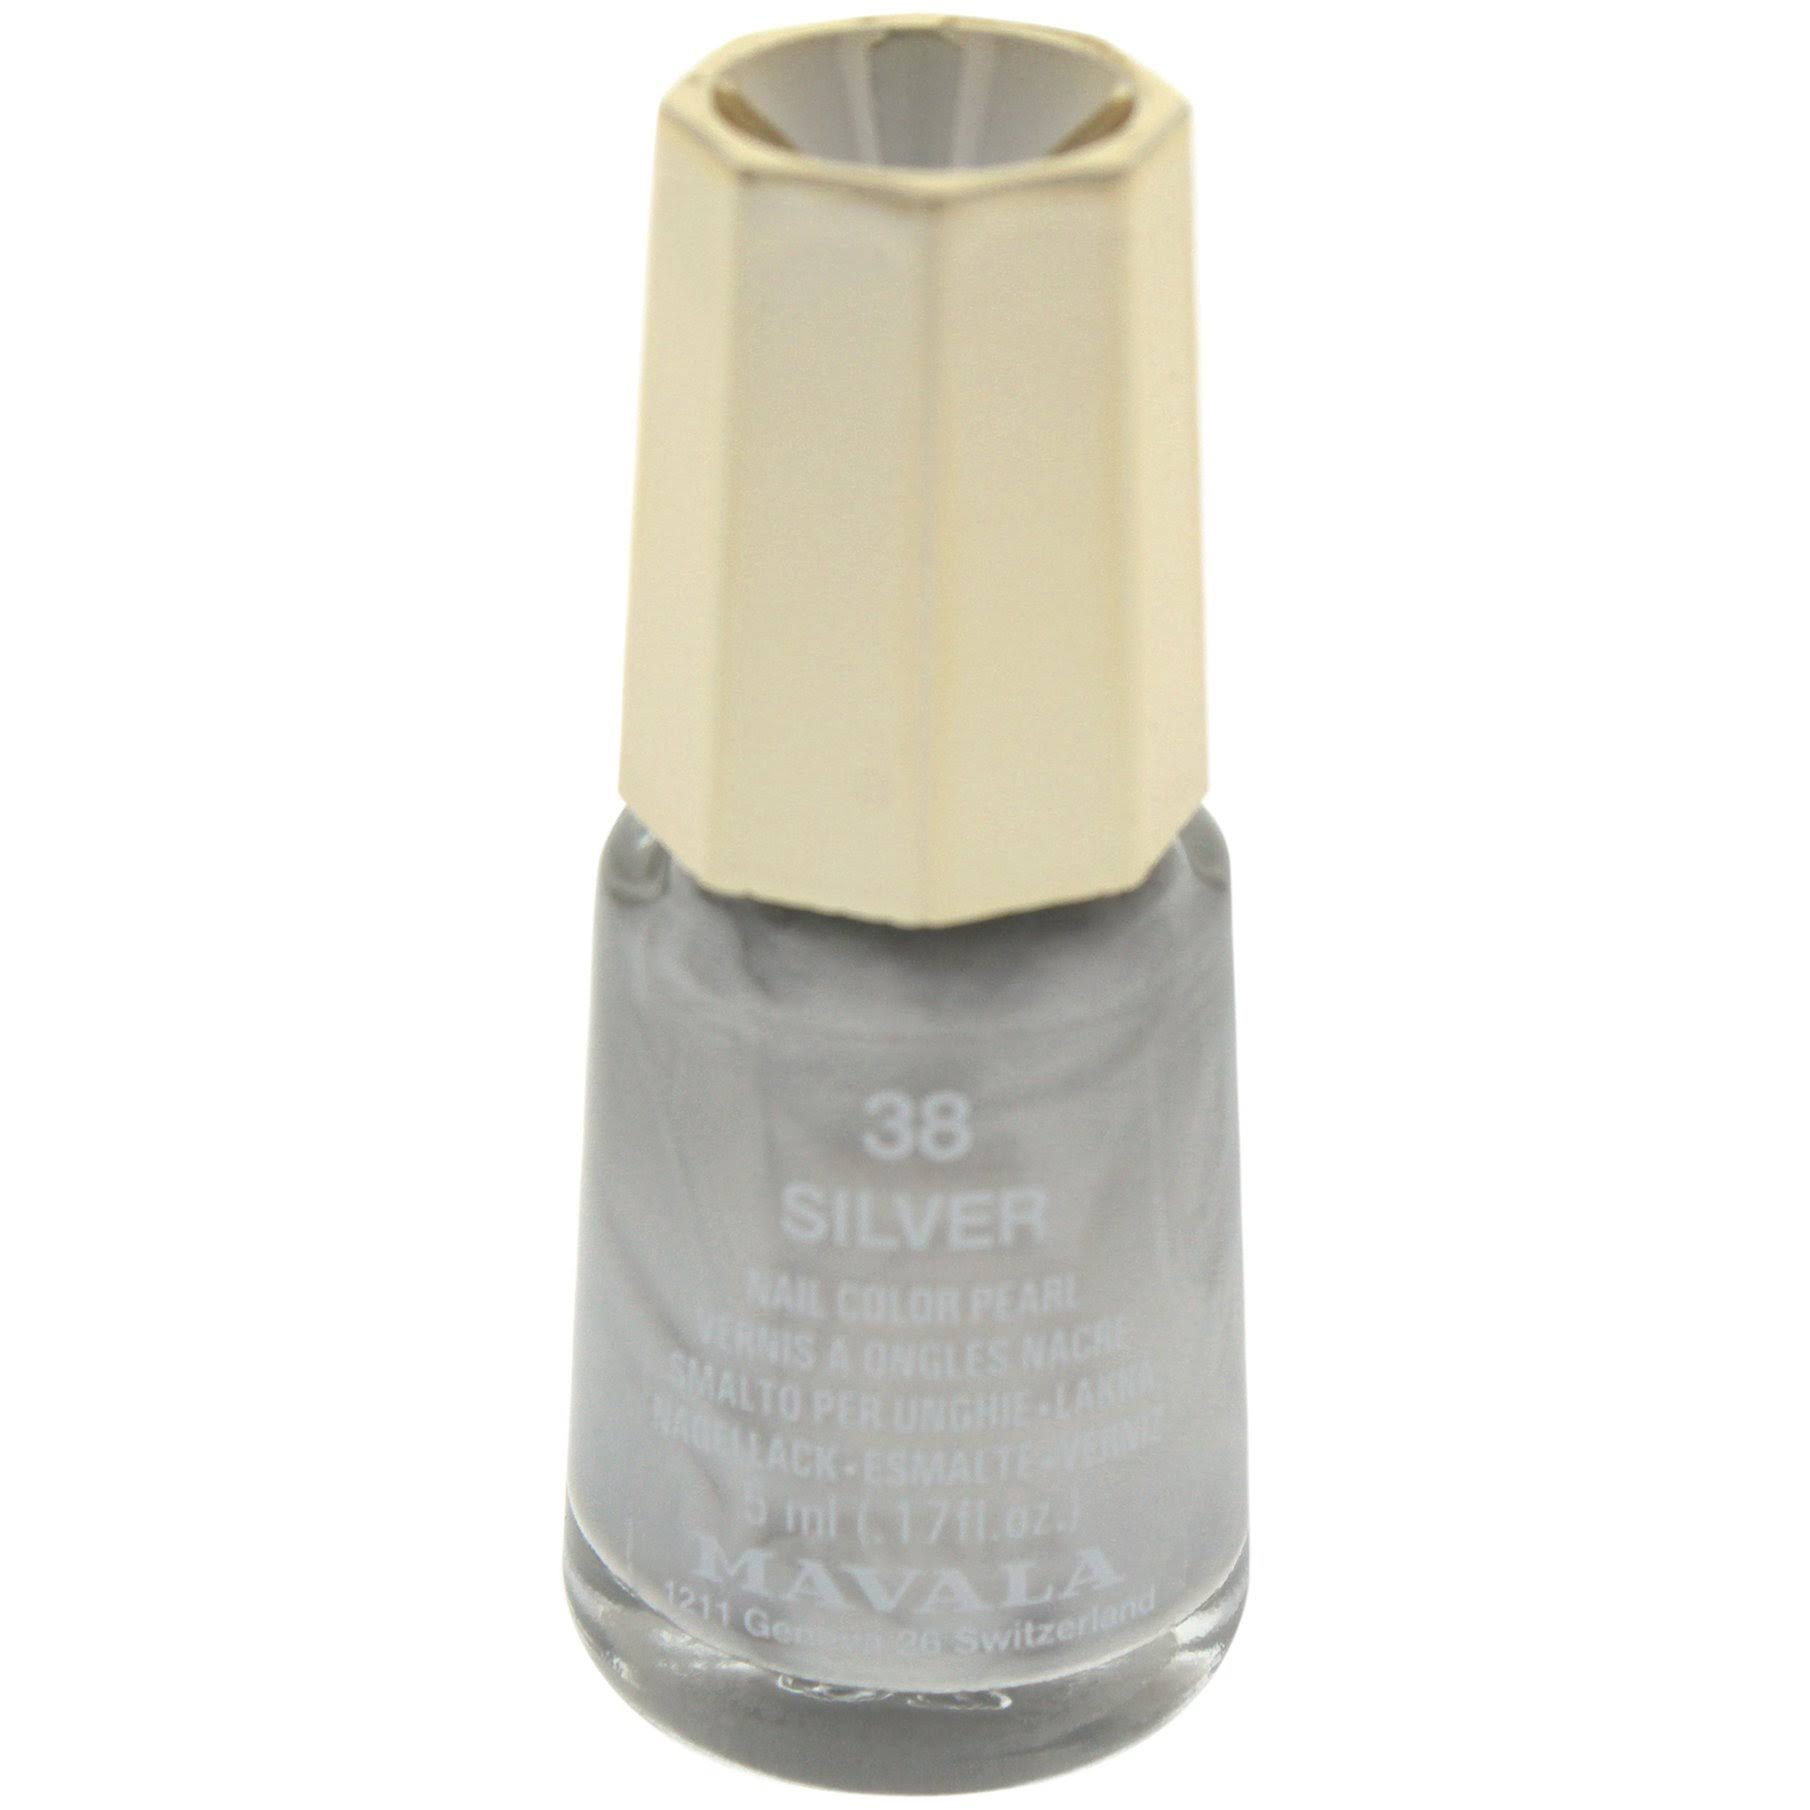 Mavala Nail Color Cream - 38 Silver - 5ml